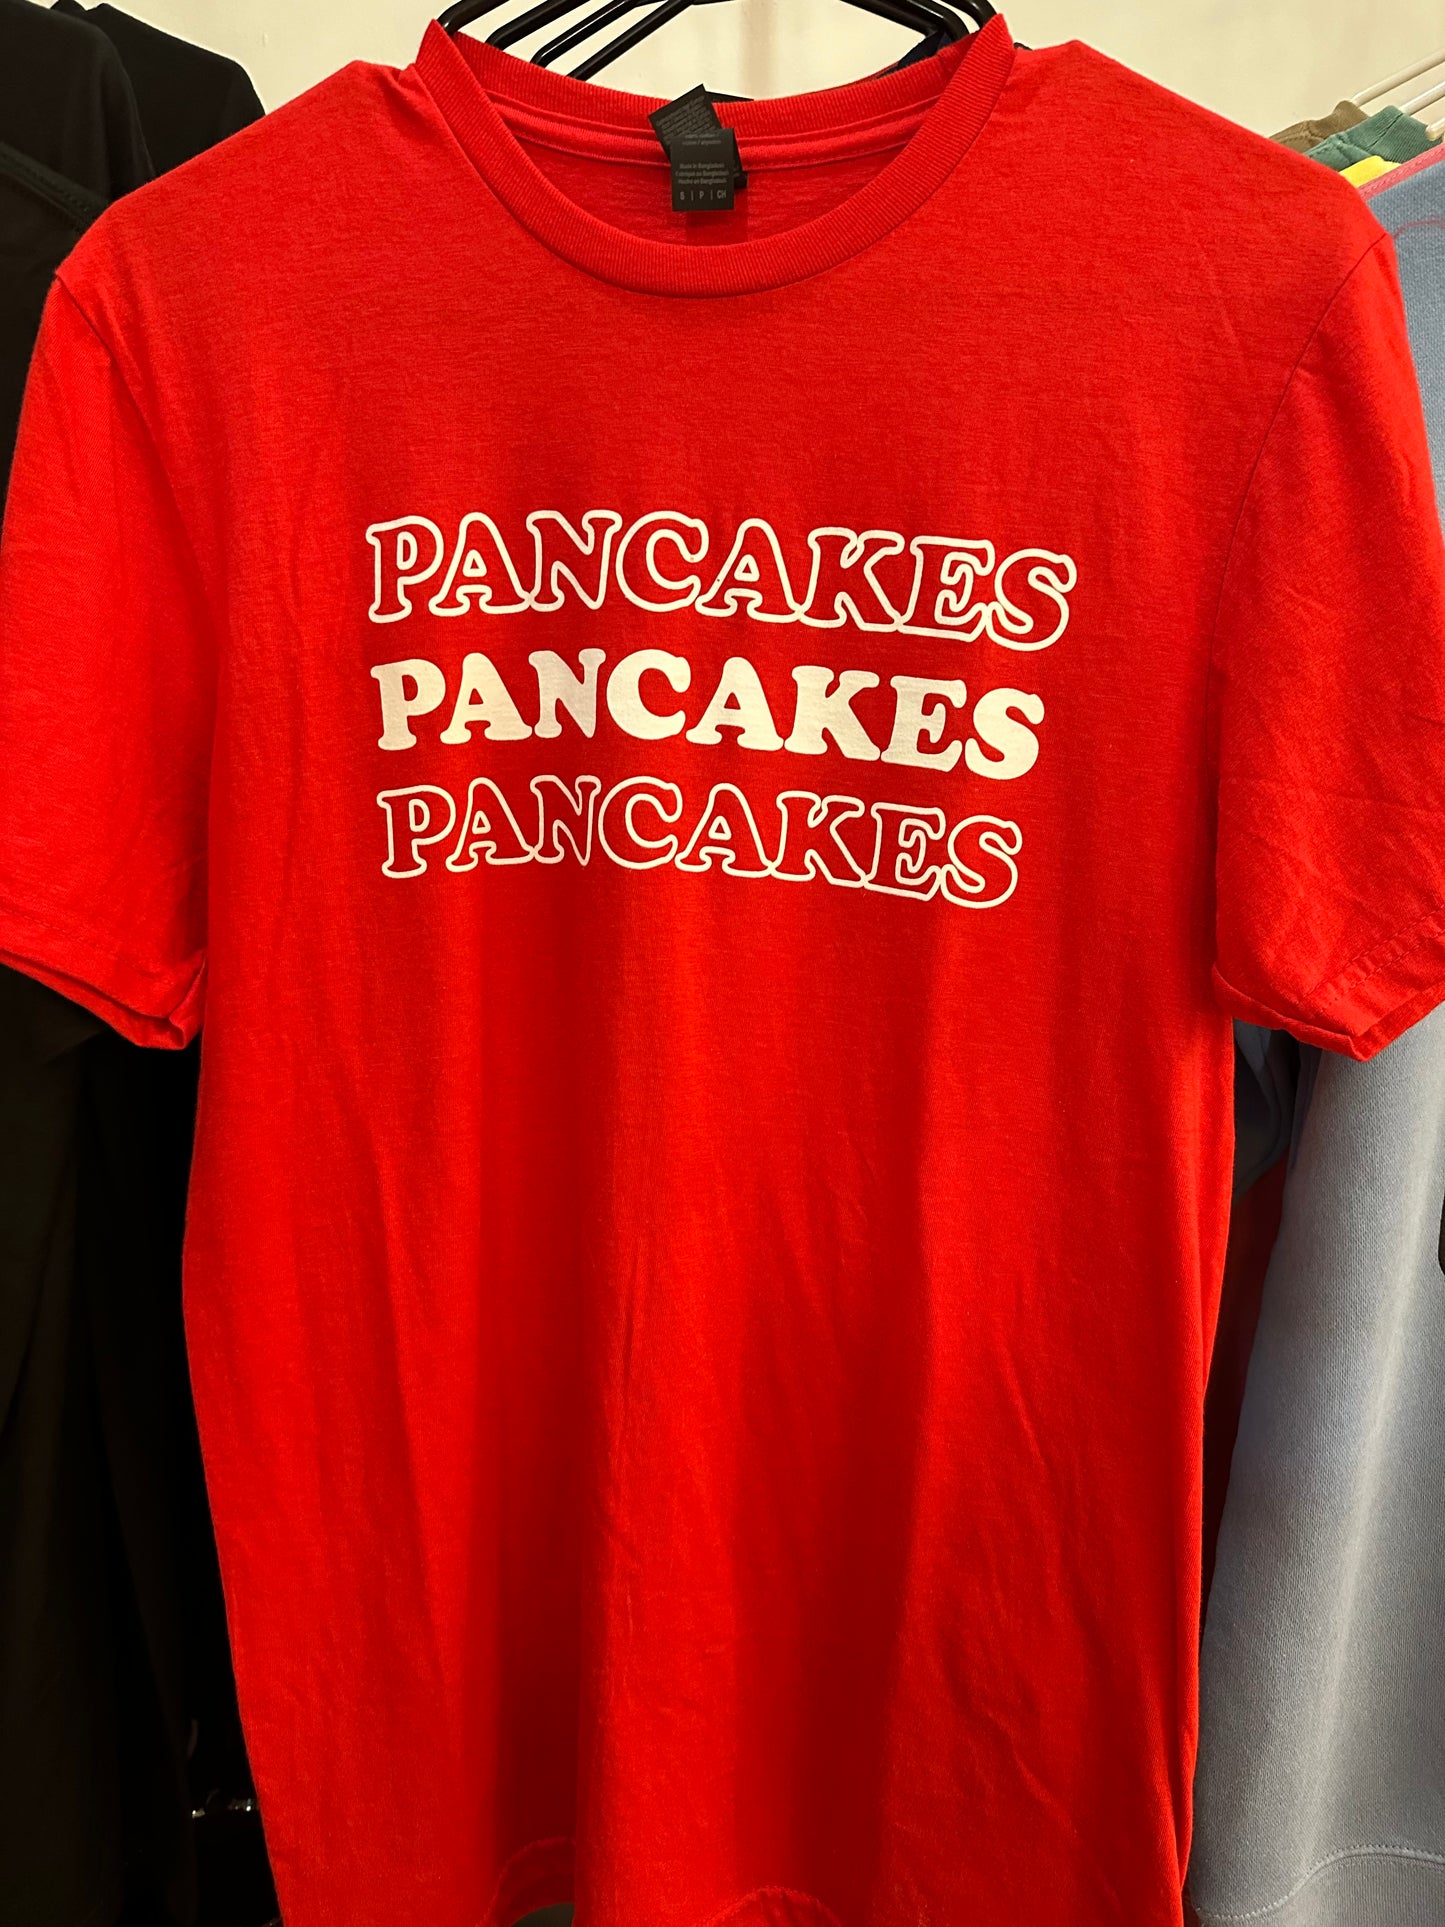 Pancakes, Pancakes, Pancakes Tees - CLEARANCE